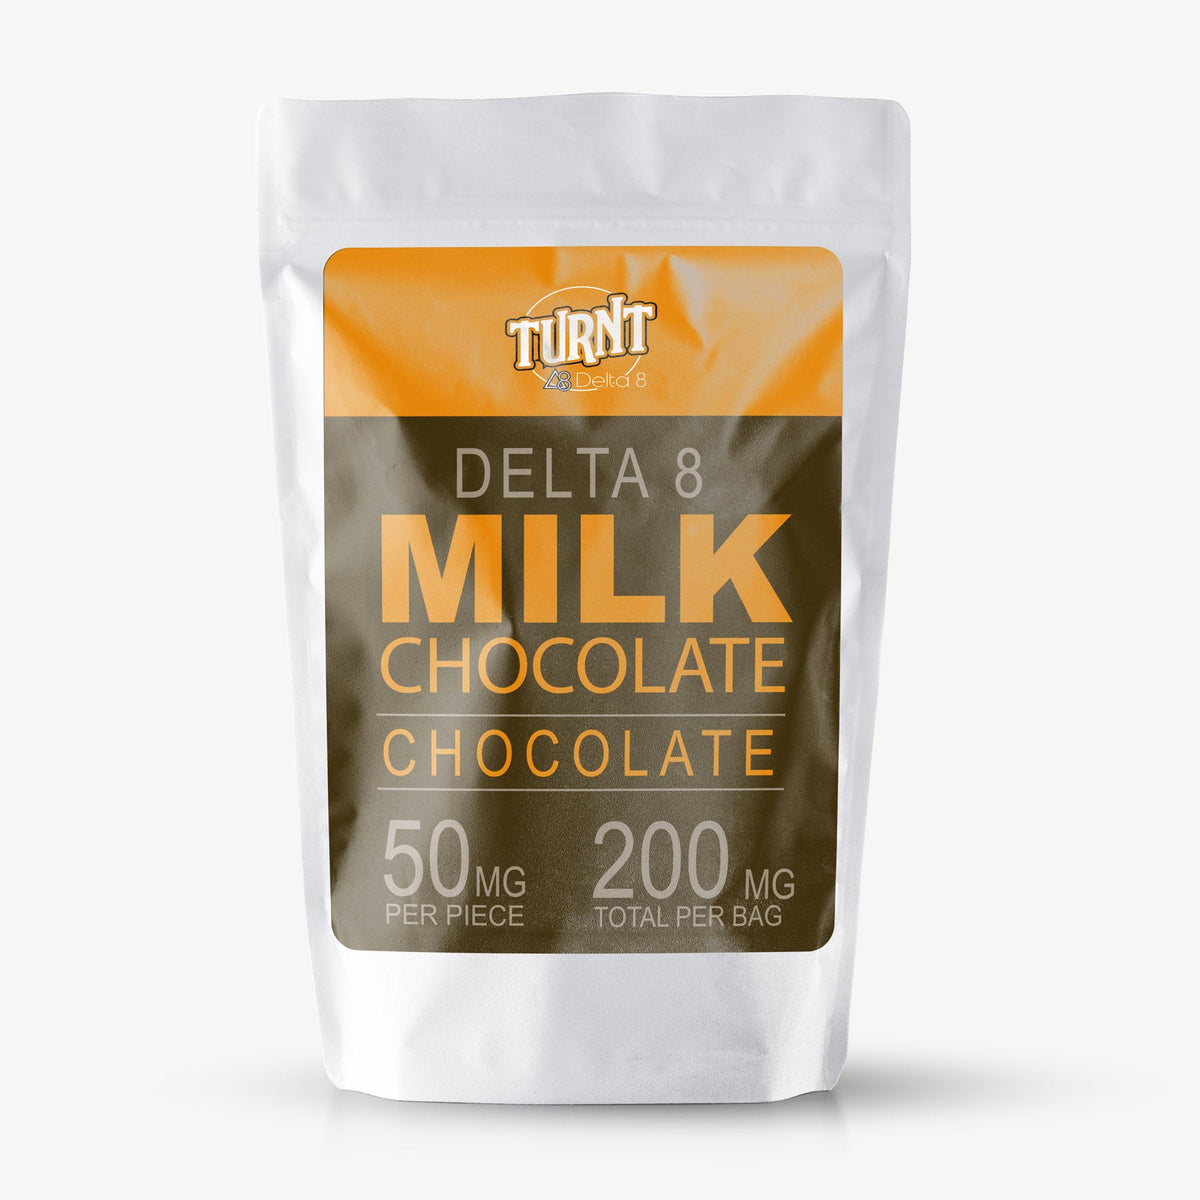 TURNT Delta 8 Milk Chocolate Squares